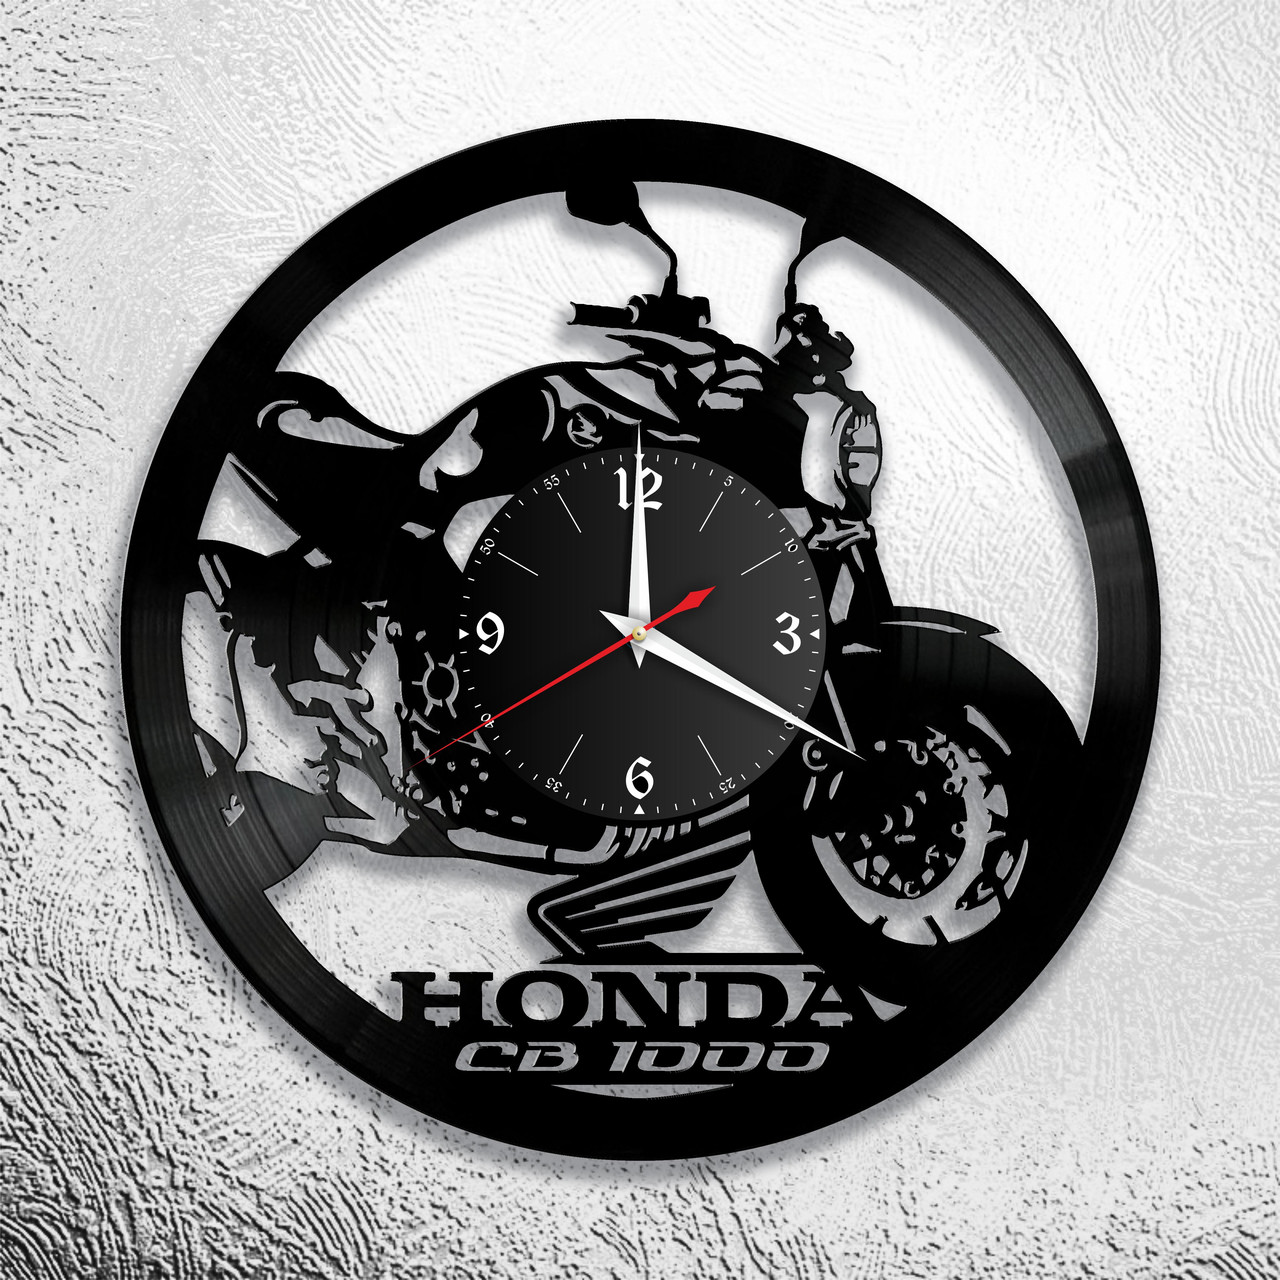 Оригинальные часы из виниловых пластинок  "Мото" версия 12 (Honda CB1000), фото 1